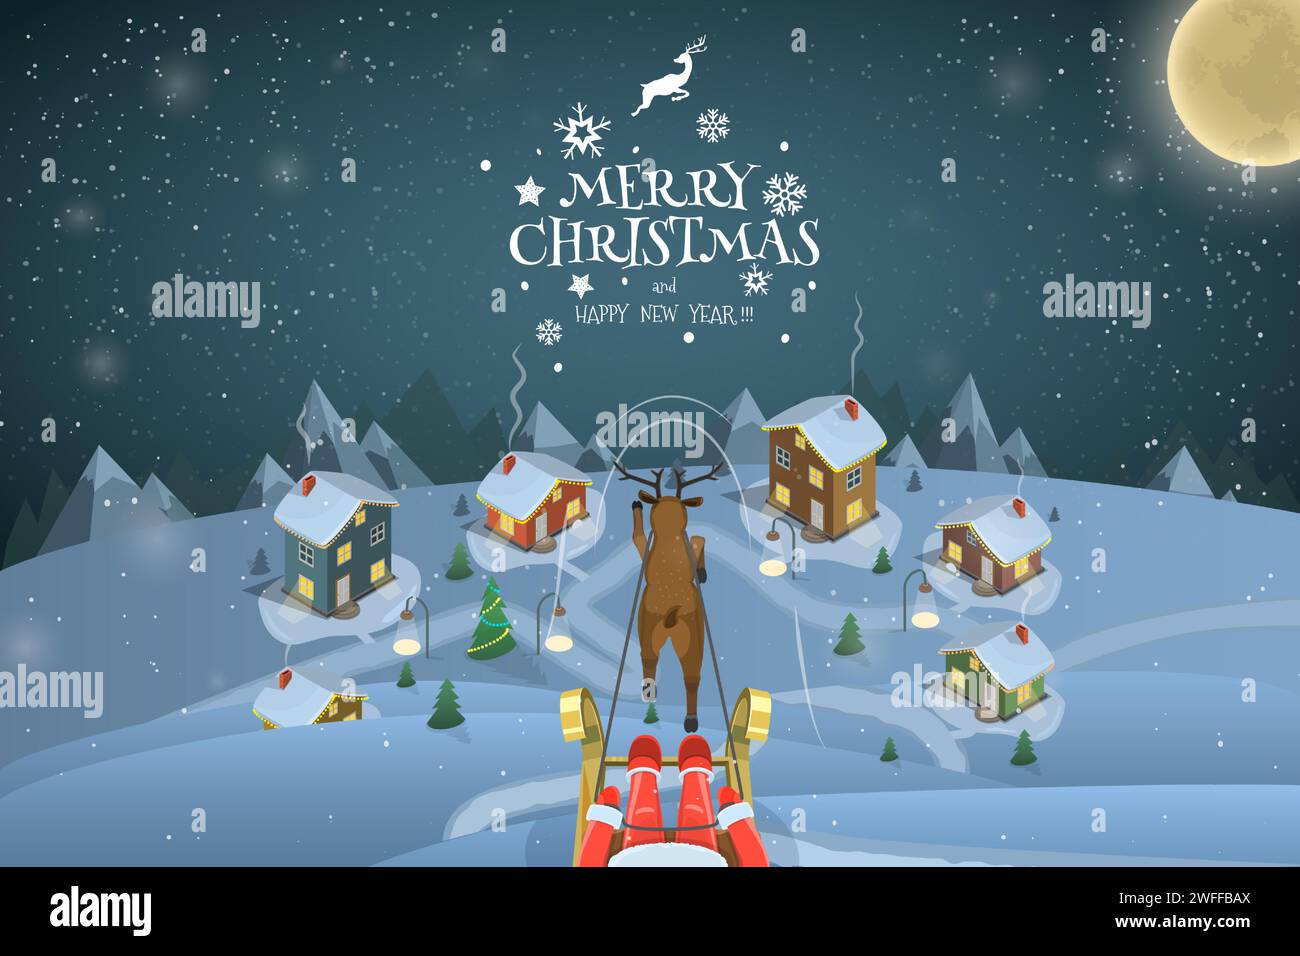 Weihnachten Abend Landschaft Vektor Illustration. Der Weihnachtsmann fliegt über das verschneite Dorf und fährt einen Schlitten mit einem Hirsch. Stock Vektor